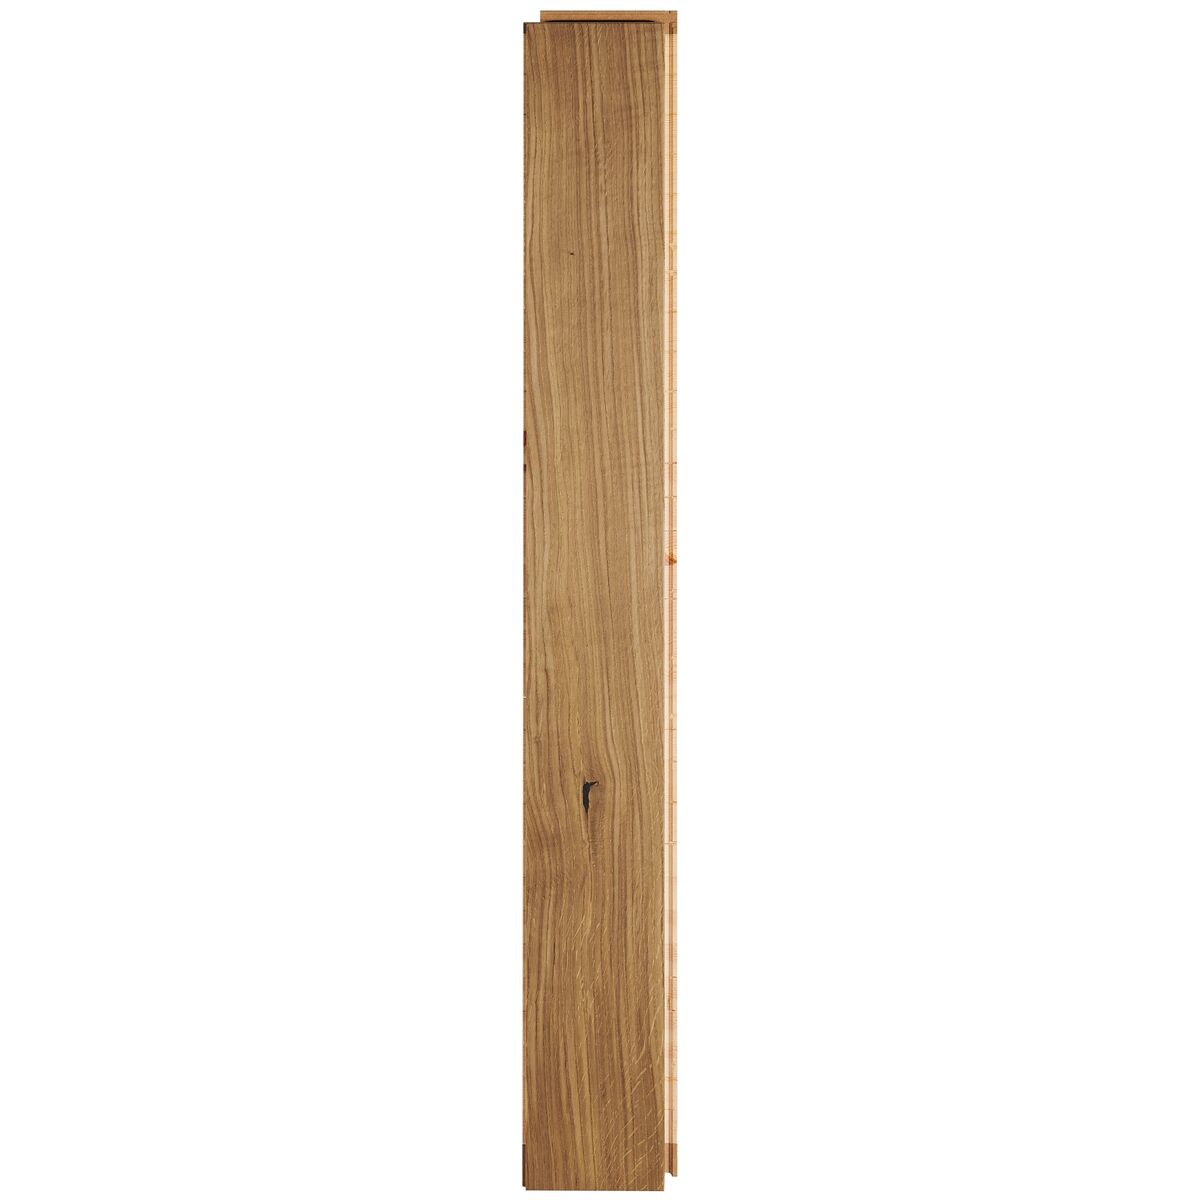 Podłoga drewniana deska trójwarstwowa Dąb advance szczotkowana 1-lamelowa olej naturalny 14 mm Barlinek